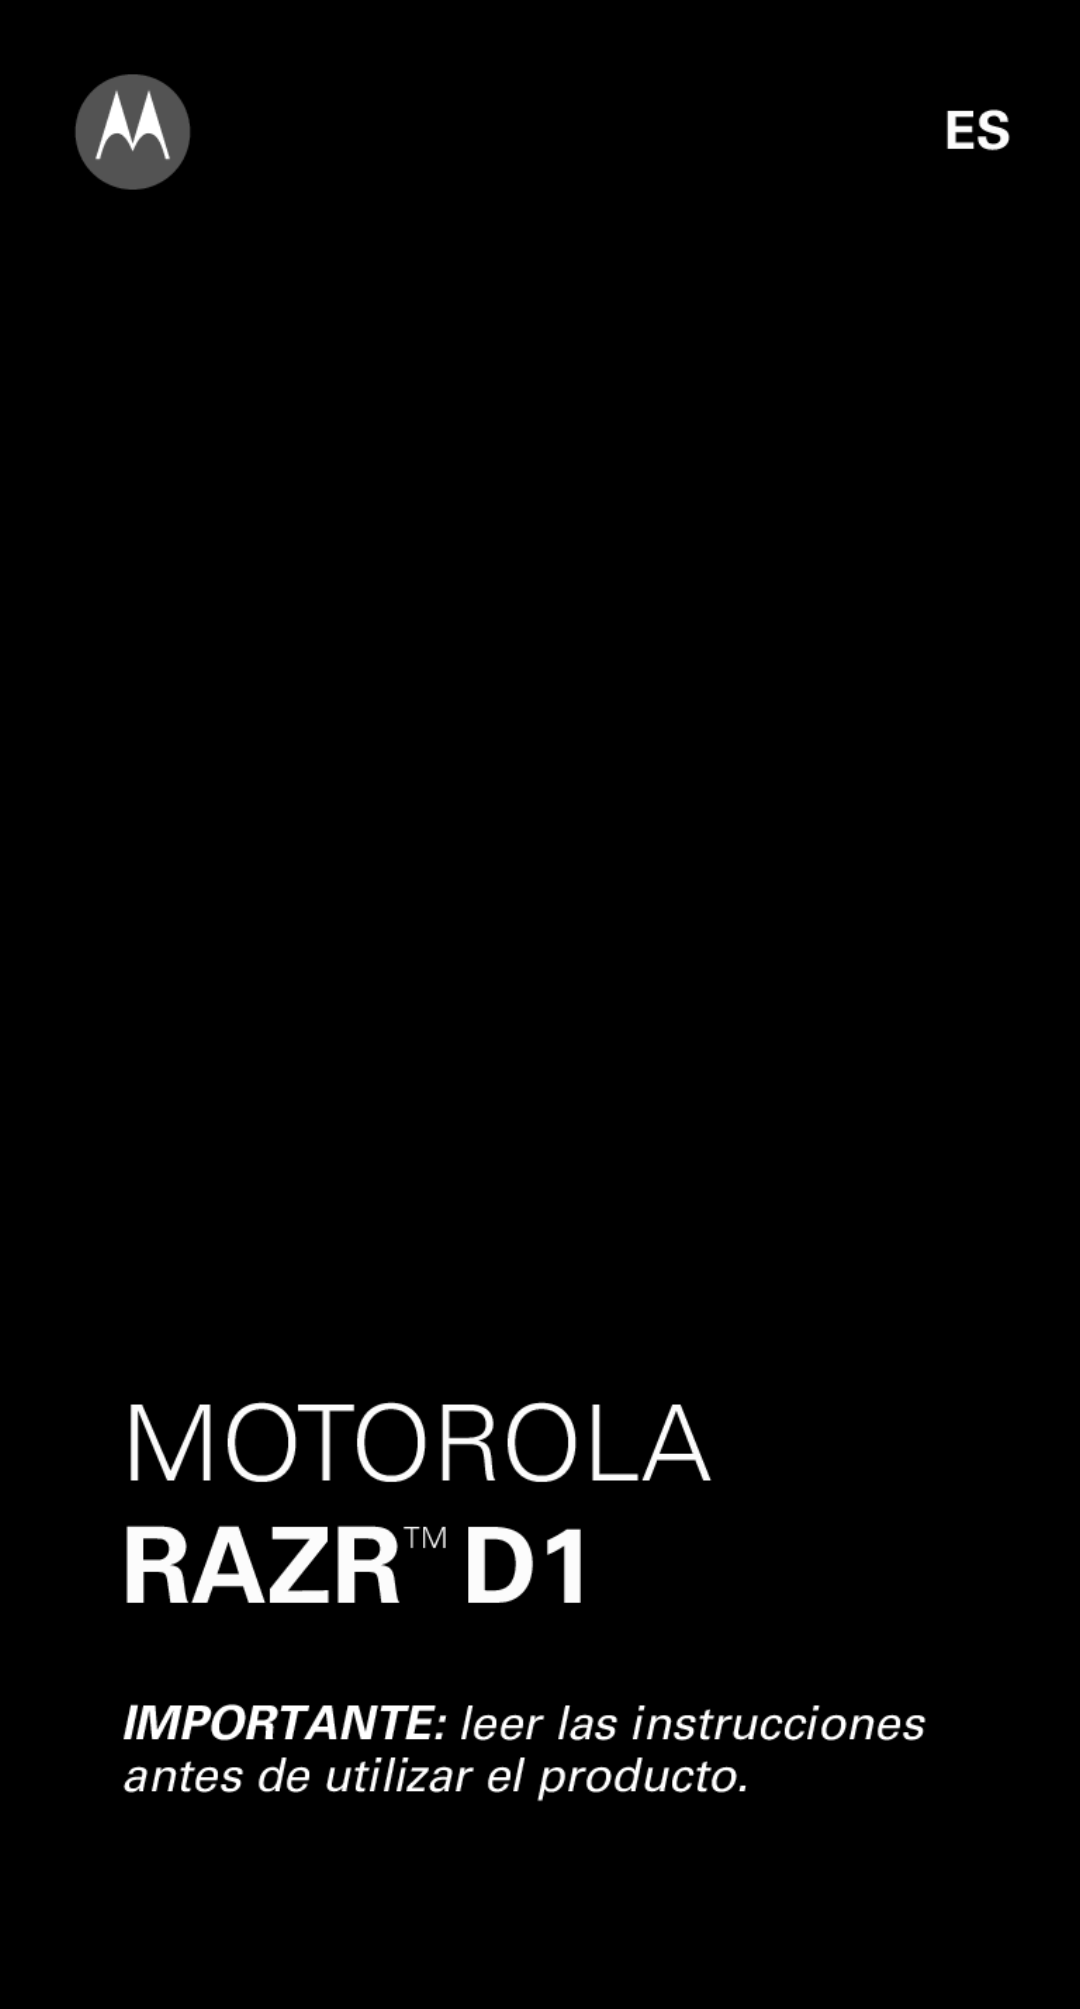 Motorola XT915 manual Motorola, RAZRTM D1, IMPORTANTE leer las instrucciones antes de utilizar el producto 